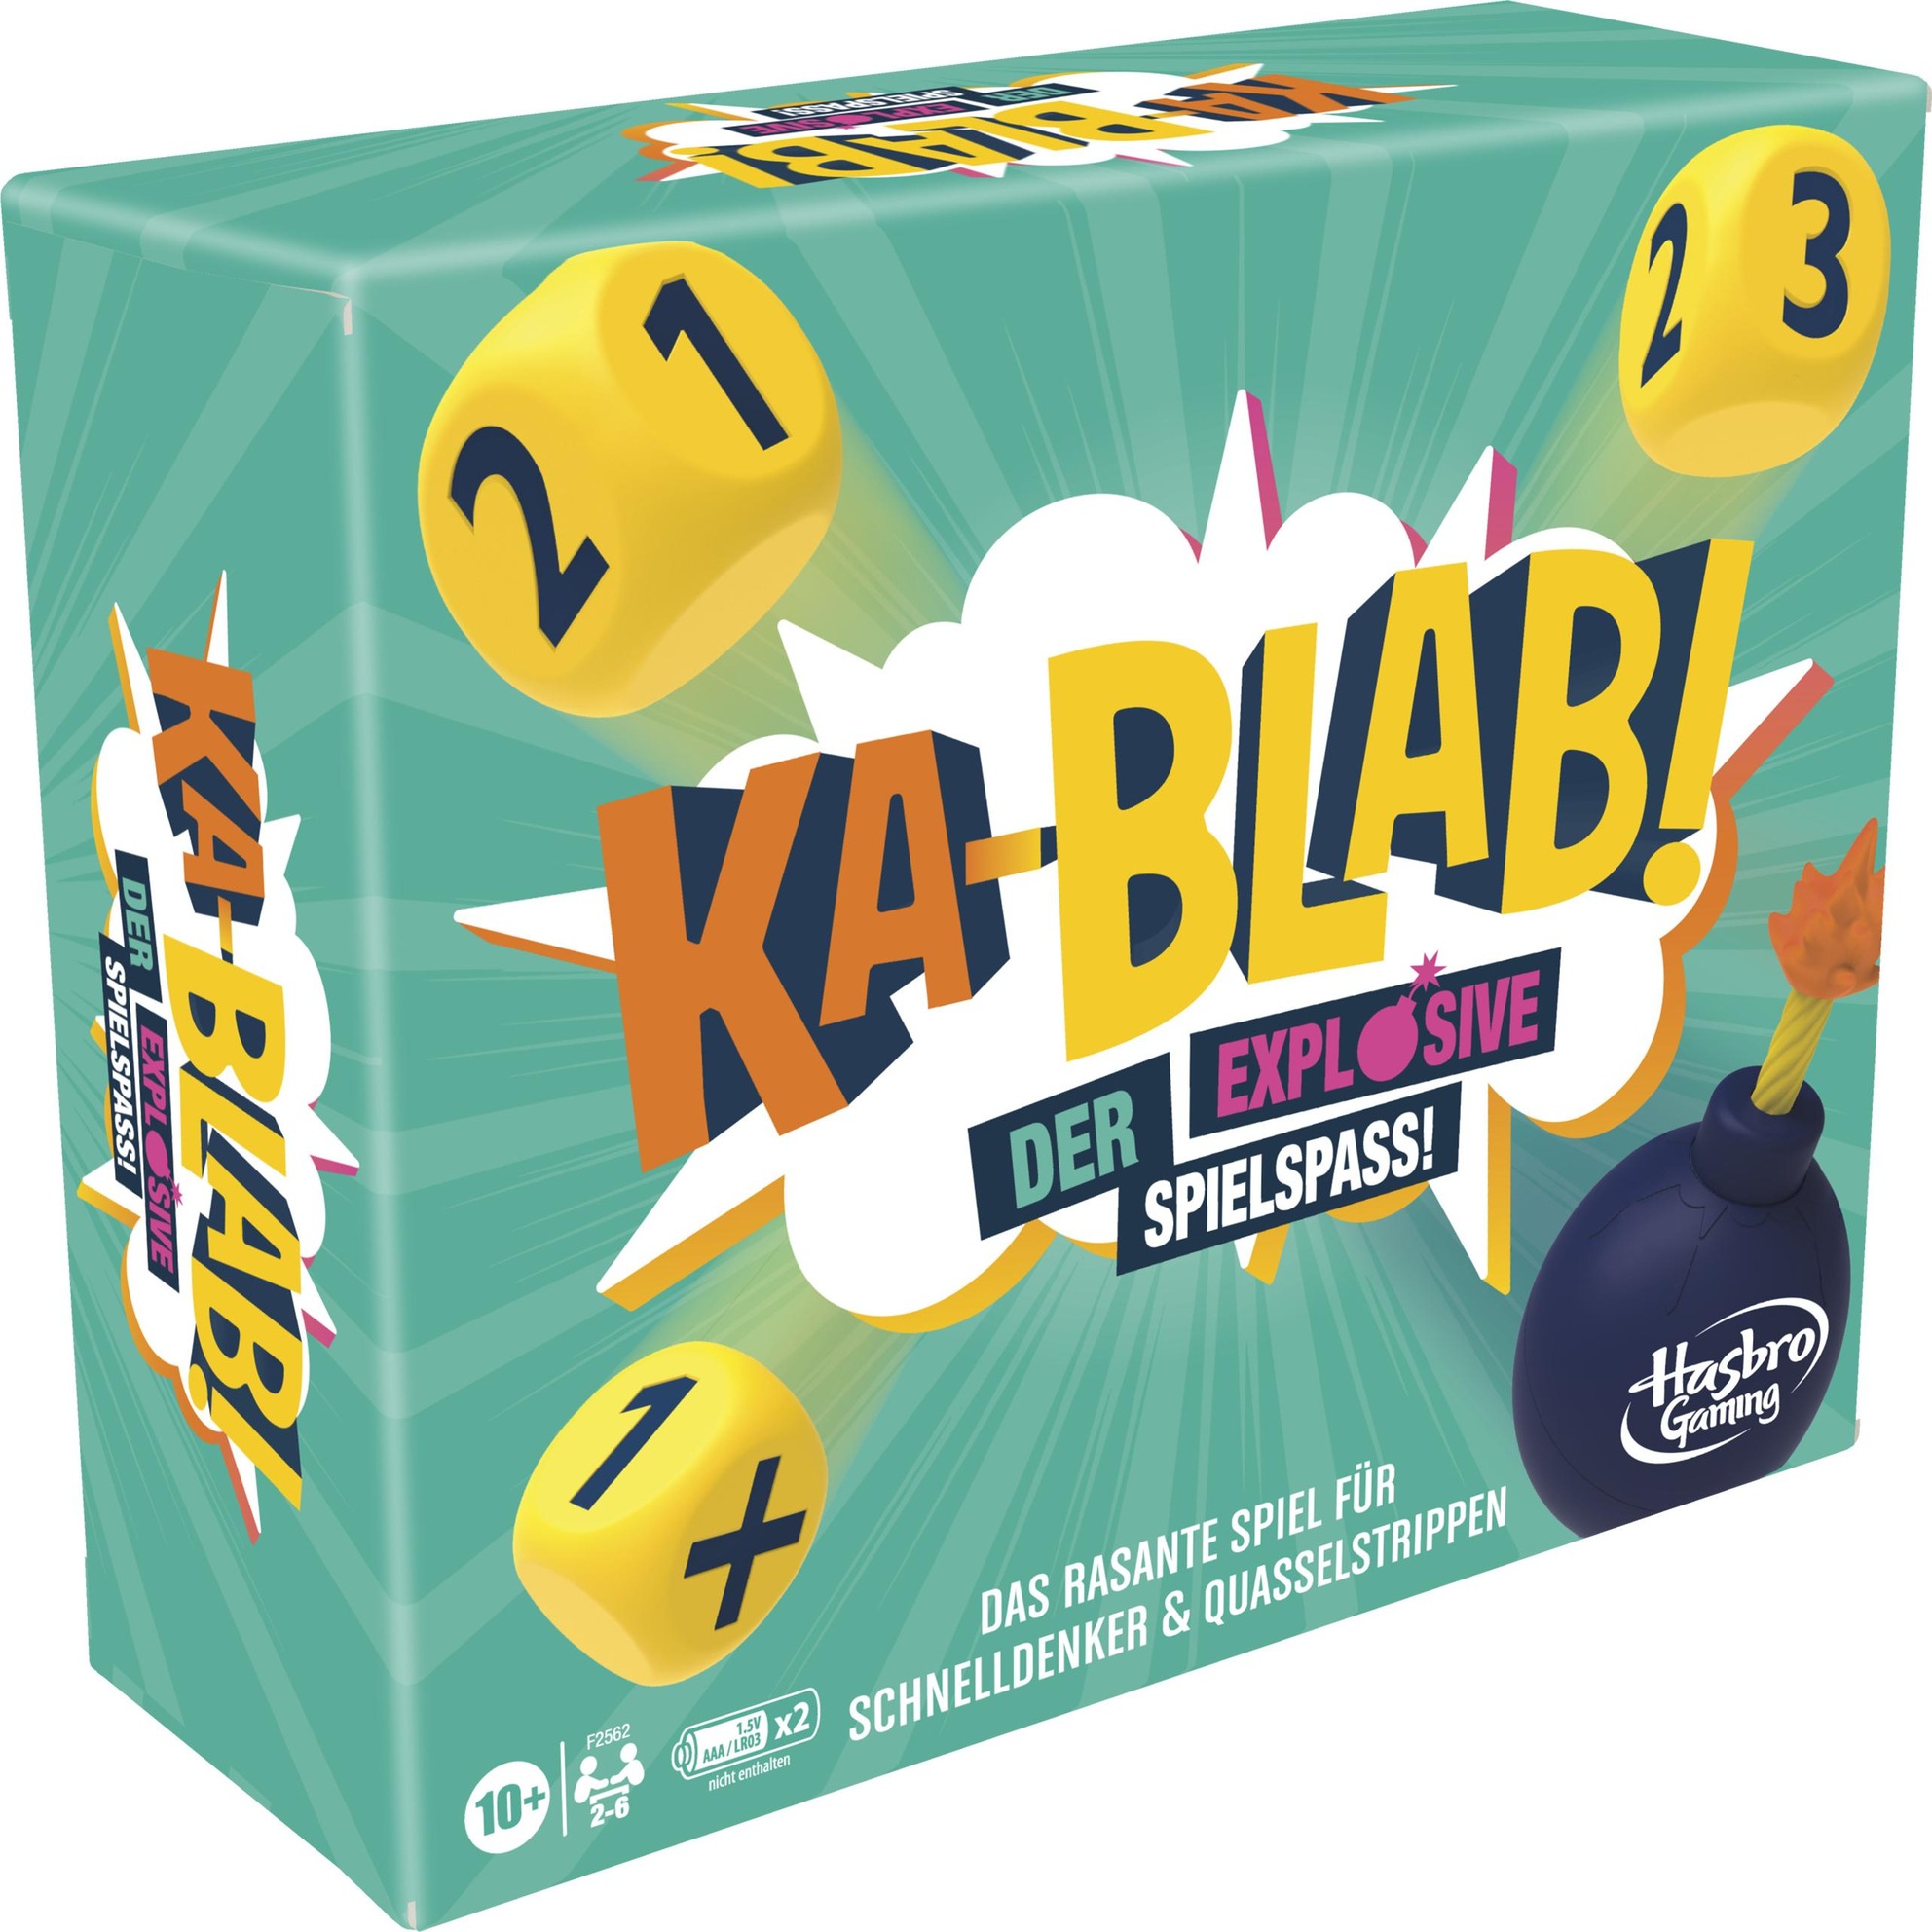 Hasbro Gaming Kablab